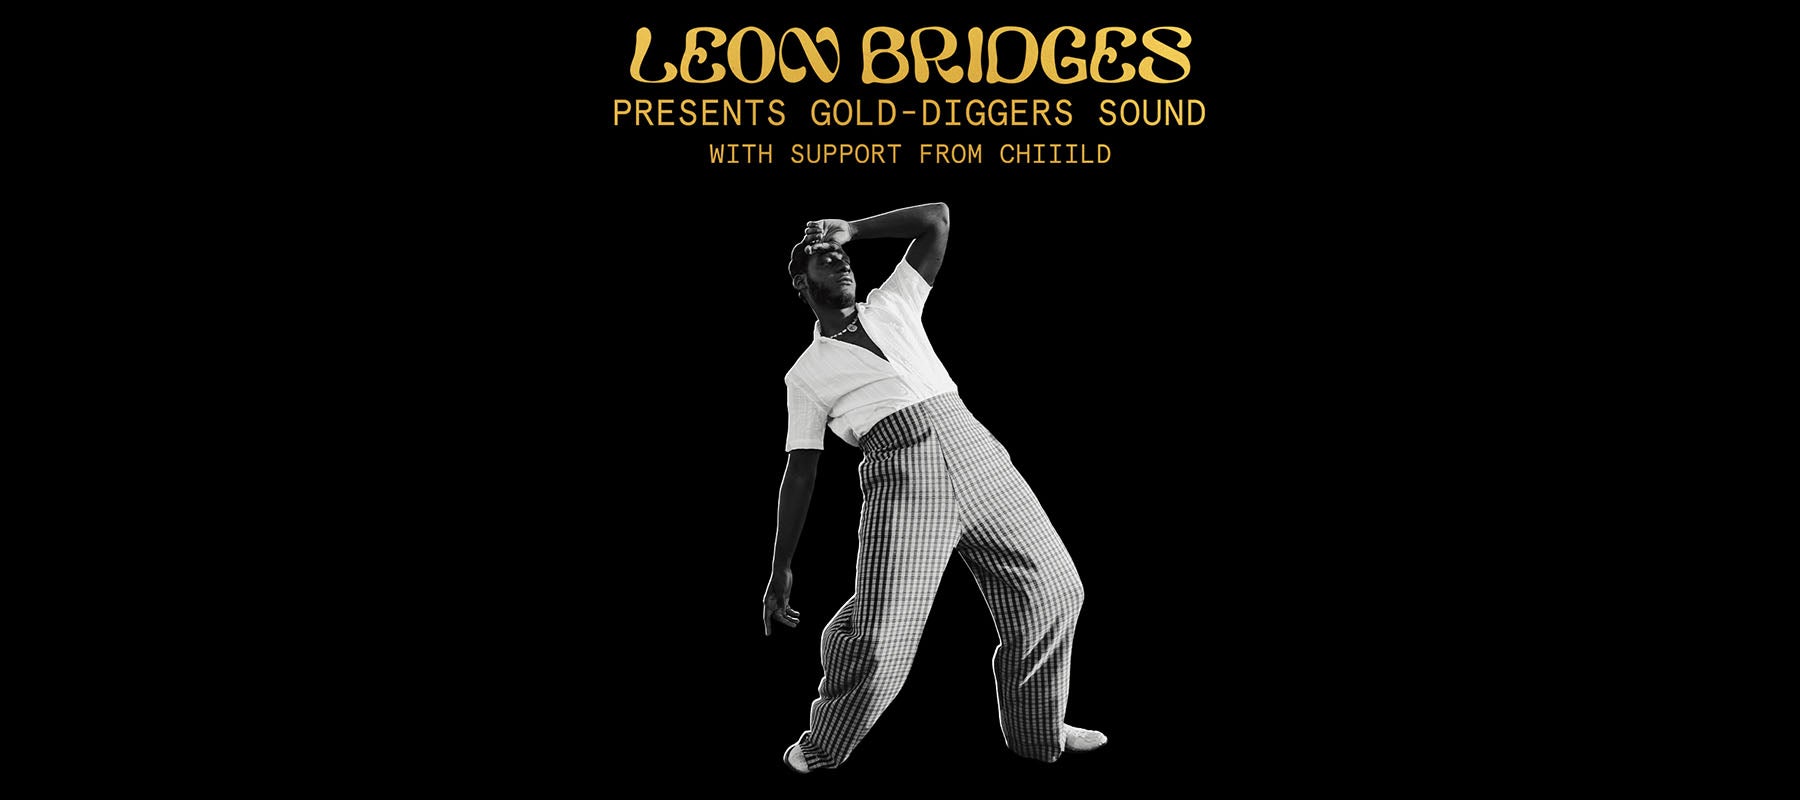 Leon Bridges Presents Gold-Diggers Sound